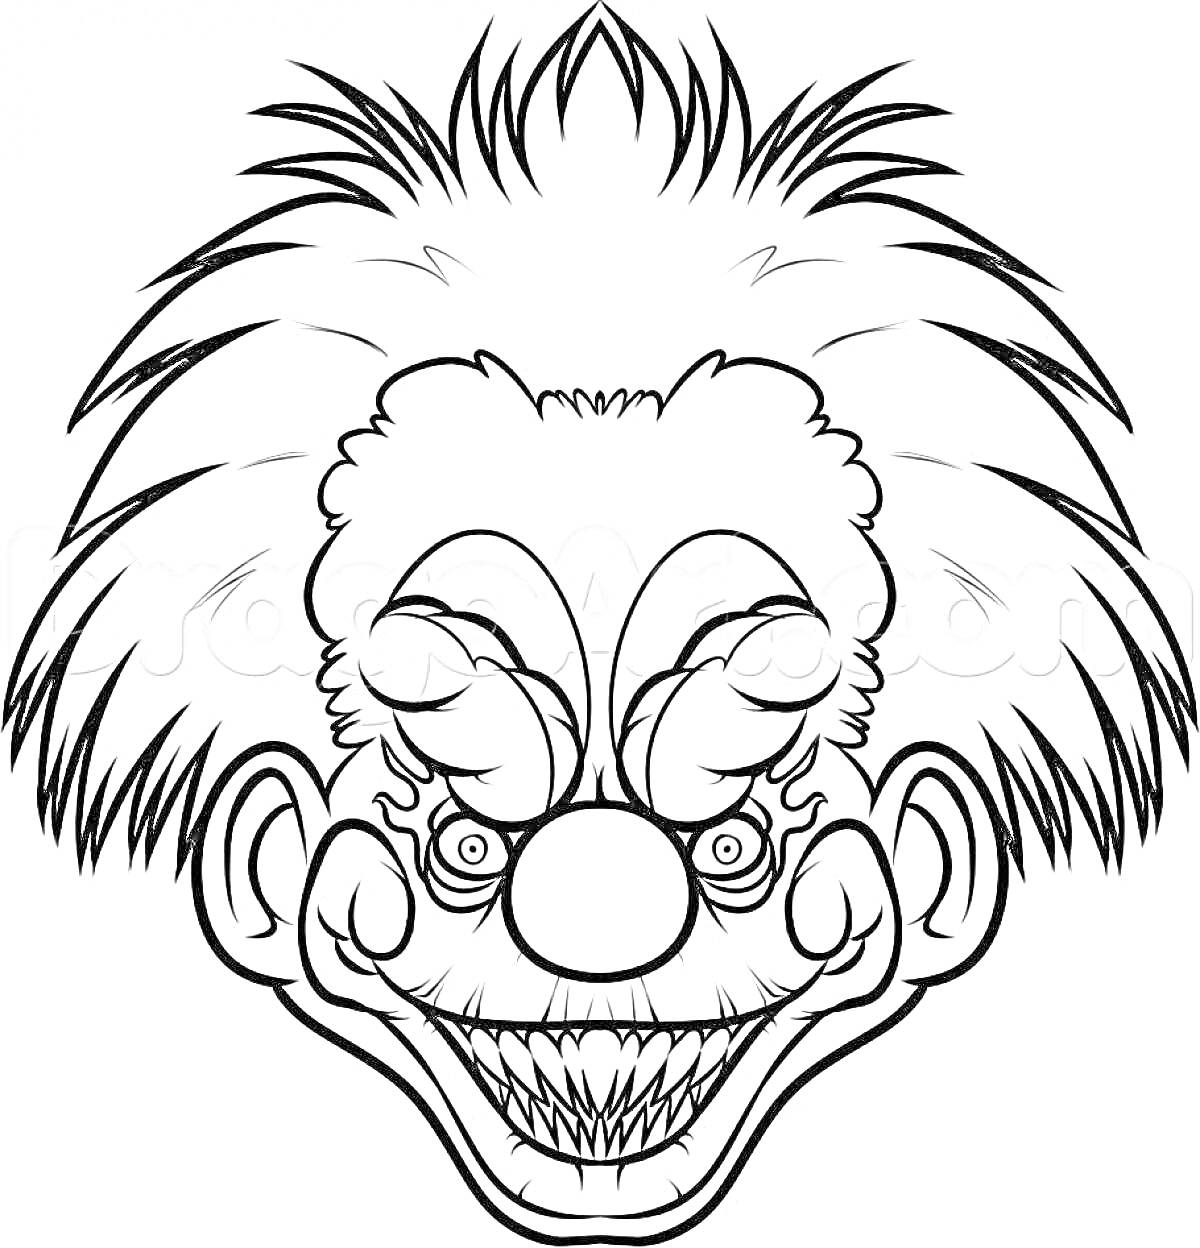 Устрашающий клоун с остроконечными зубами и растрёпанными волосами